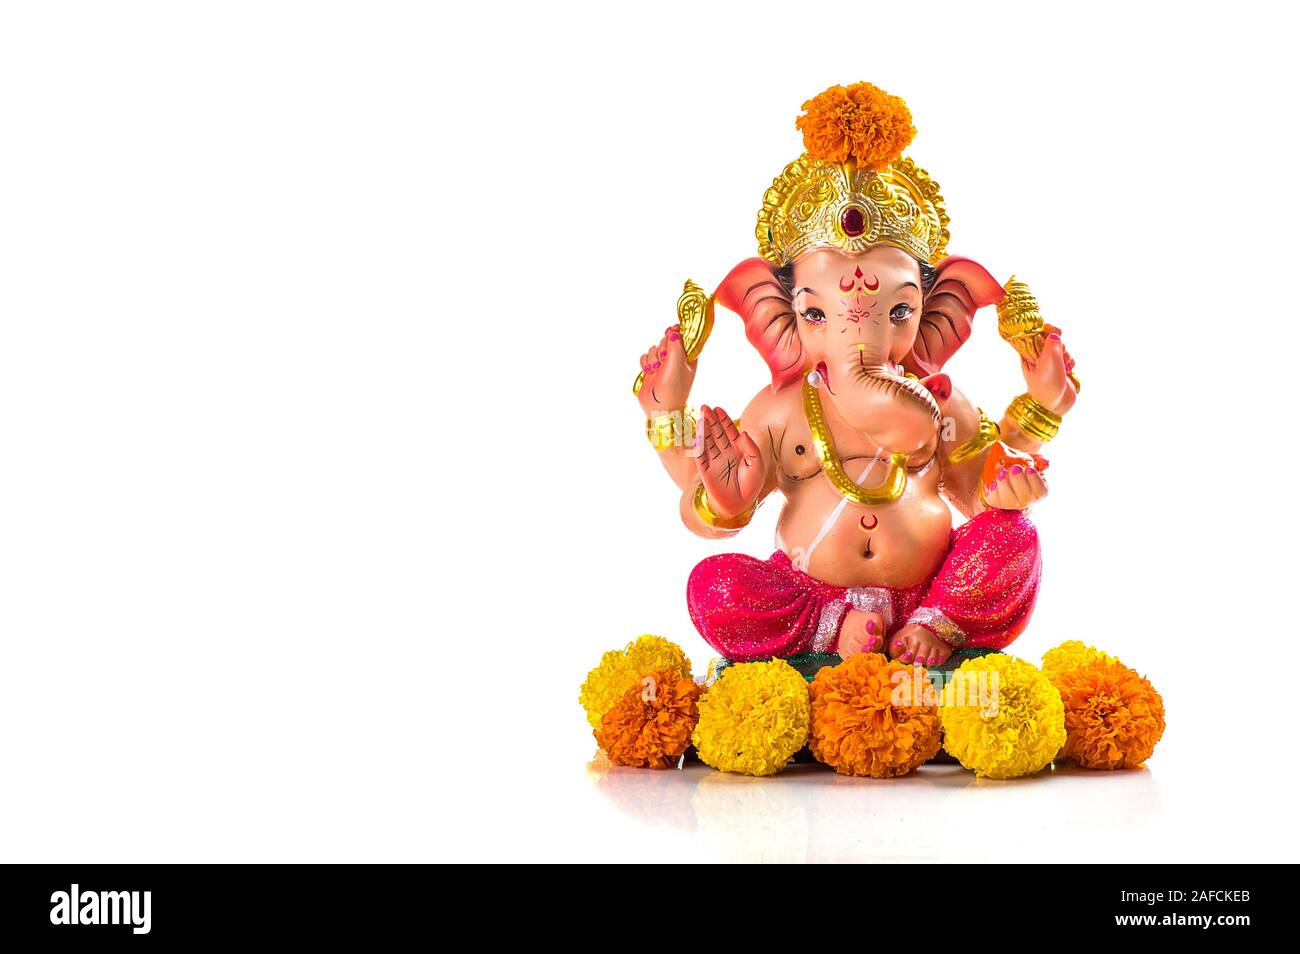 Hindu God Ganesha. Ganesha Idol on white Background Stock Photo - Alamy